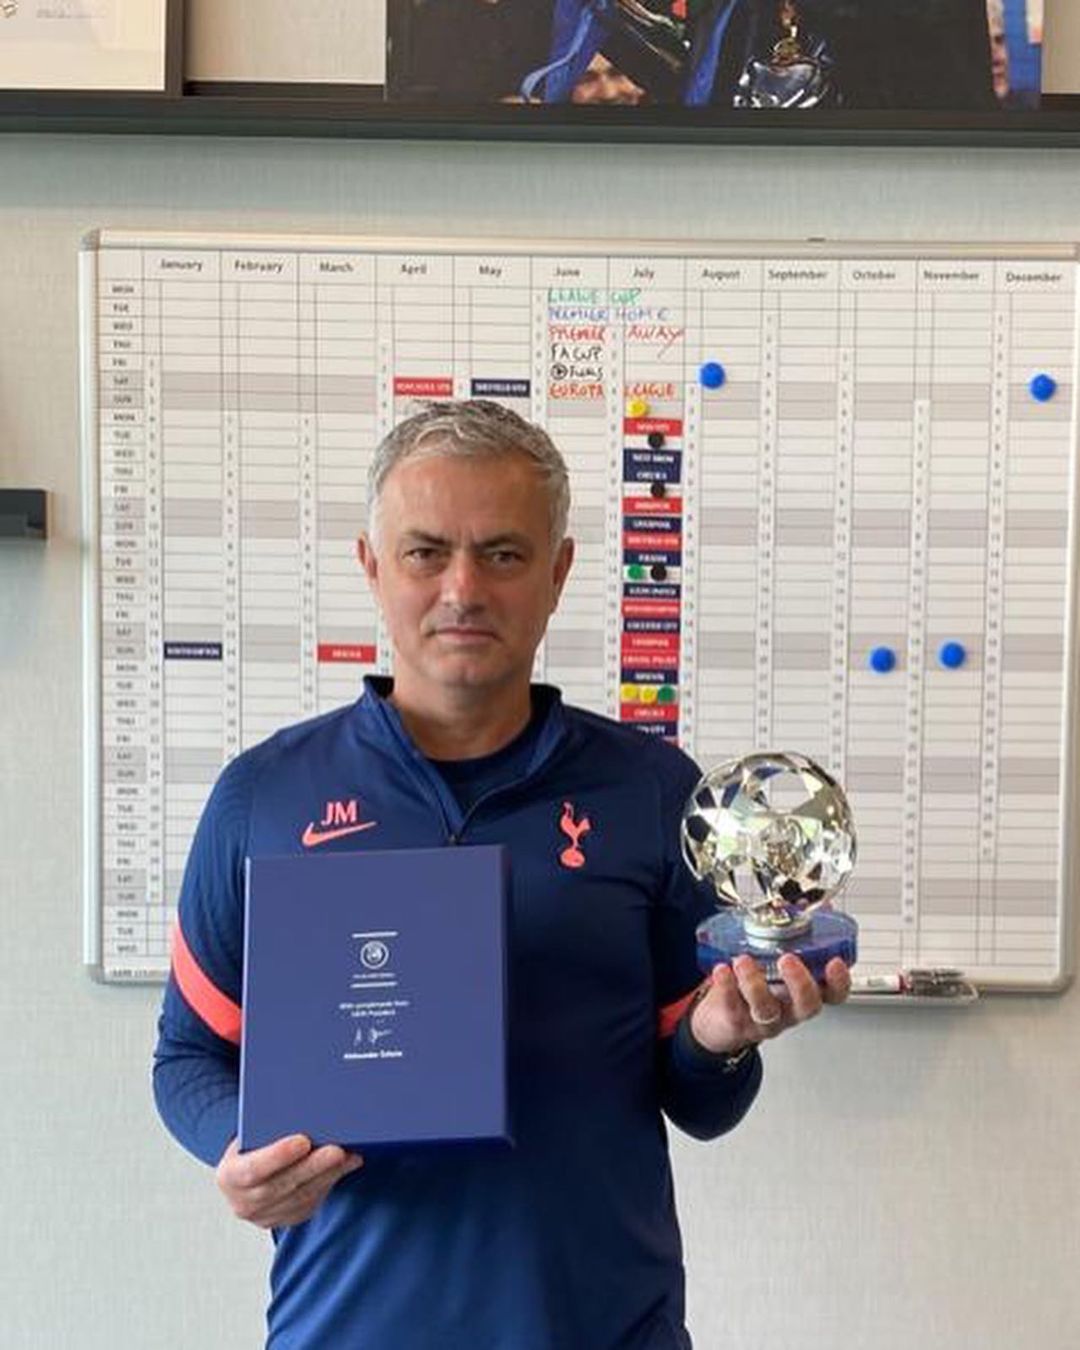 穆里尼奥在个人Instagram晒出欧足总颁给自己的特别贡献奖，他创造的足坛纪录包括9年主场不败和带领皇马在西甲取得单赛季进球最多（184球）纪录。（穆里尼奥IG照）

